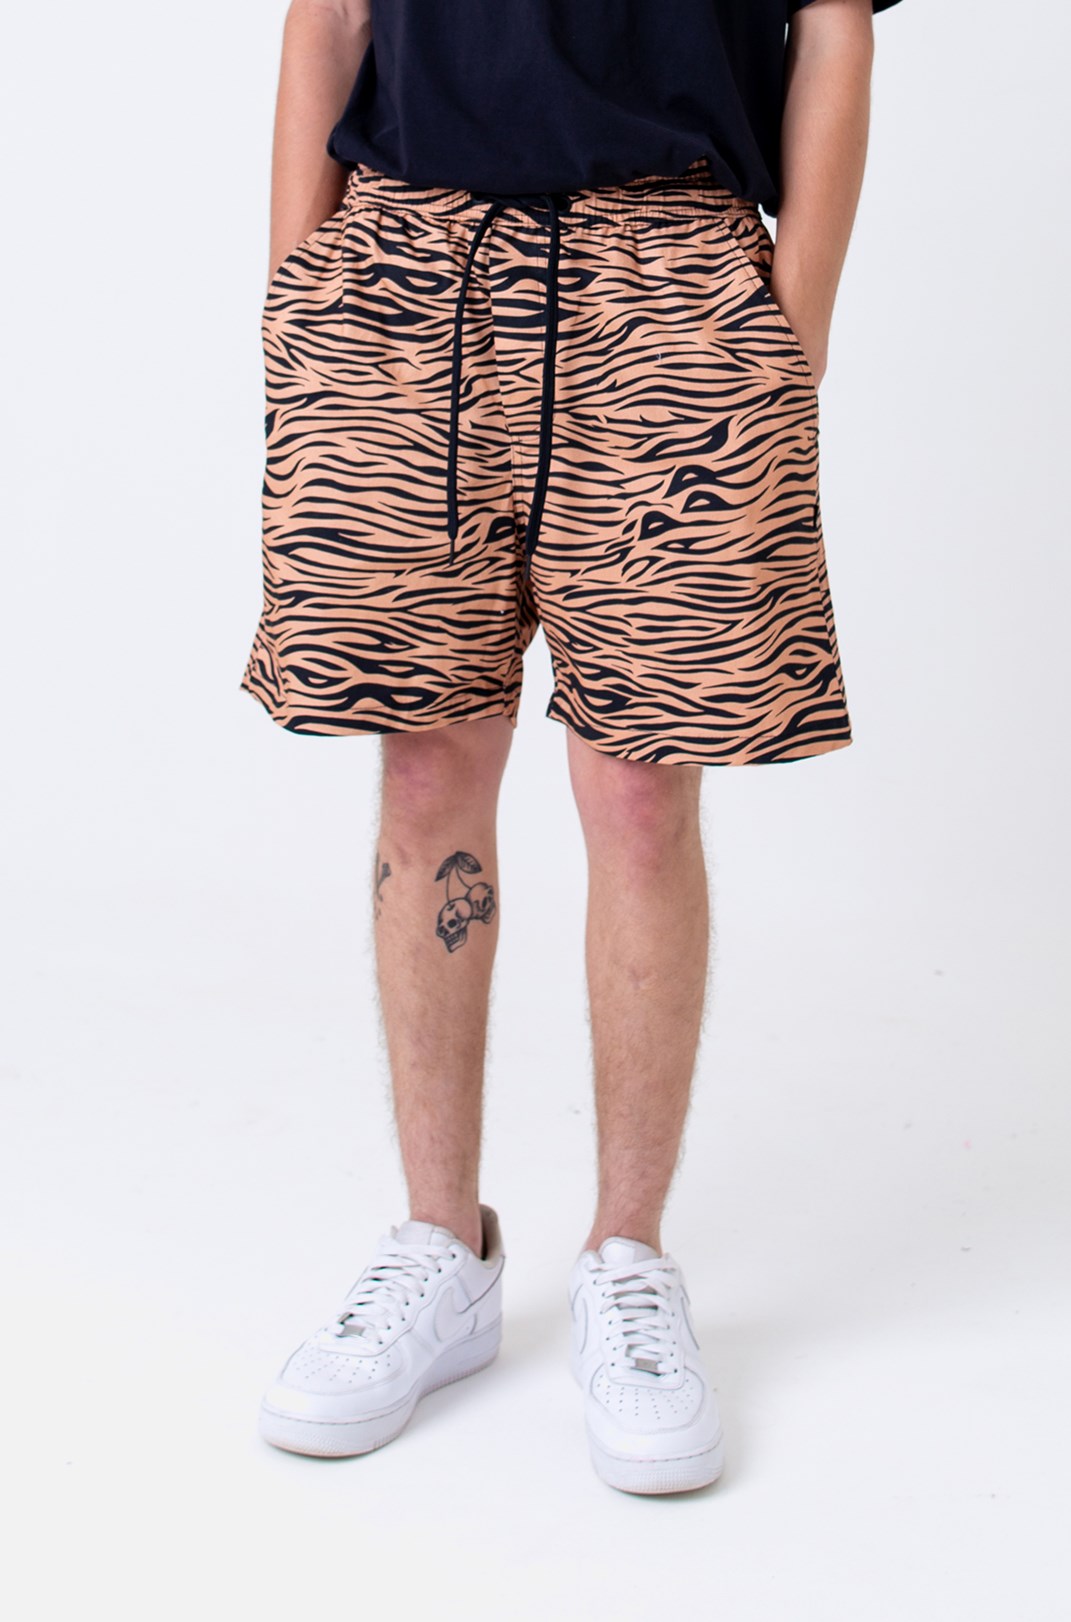 Shorts Sarja Approve Animal Print Tigre Laranja